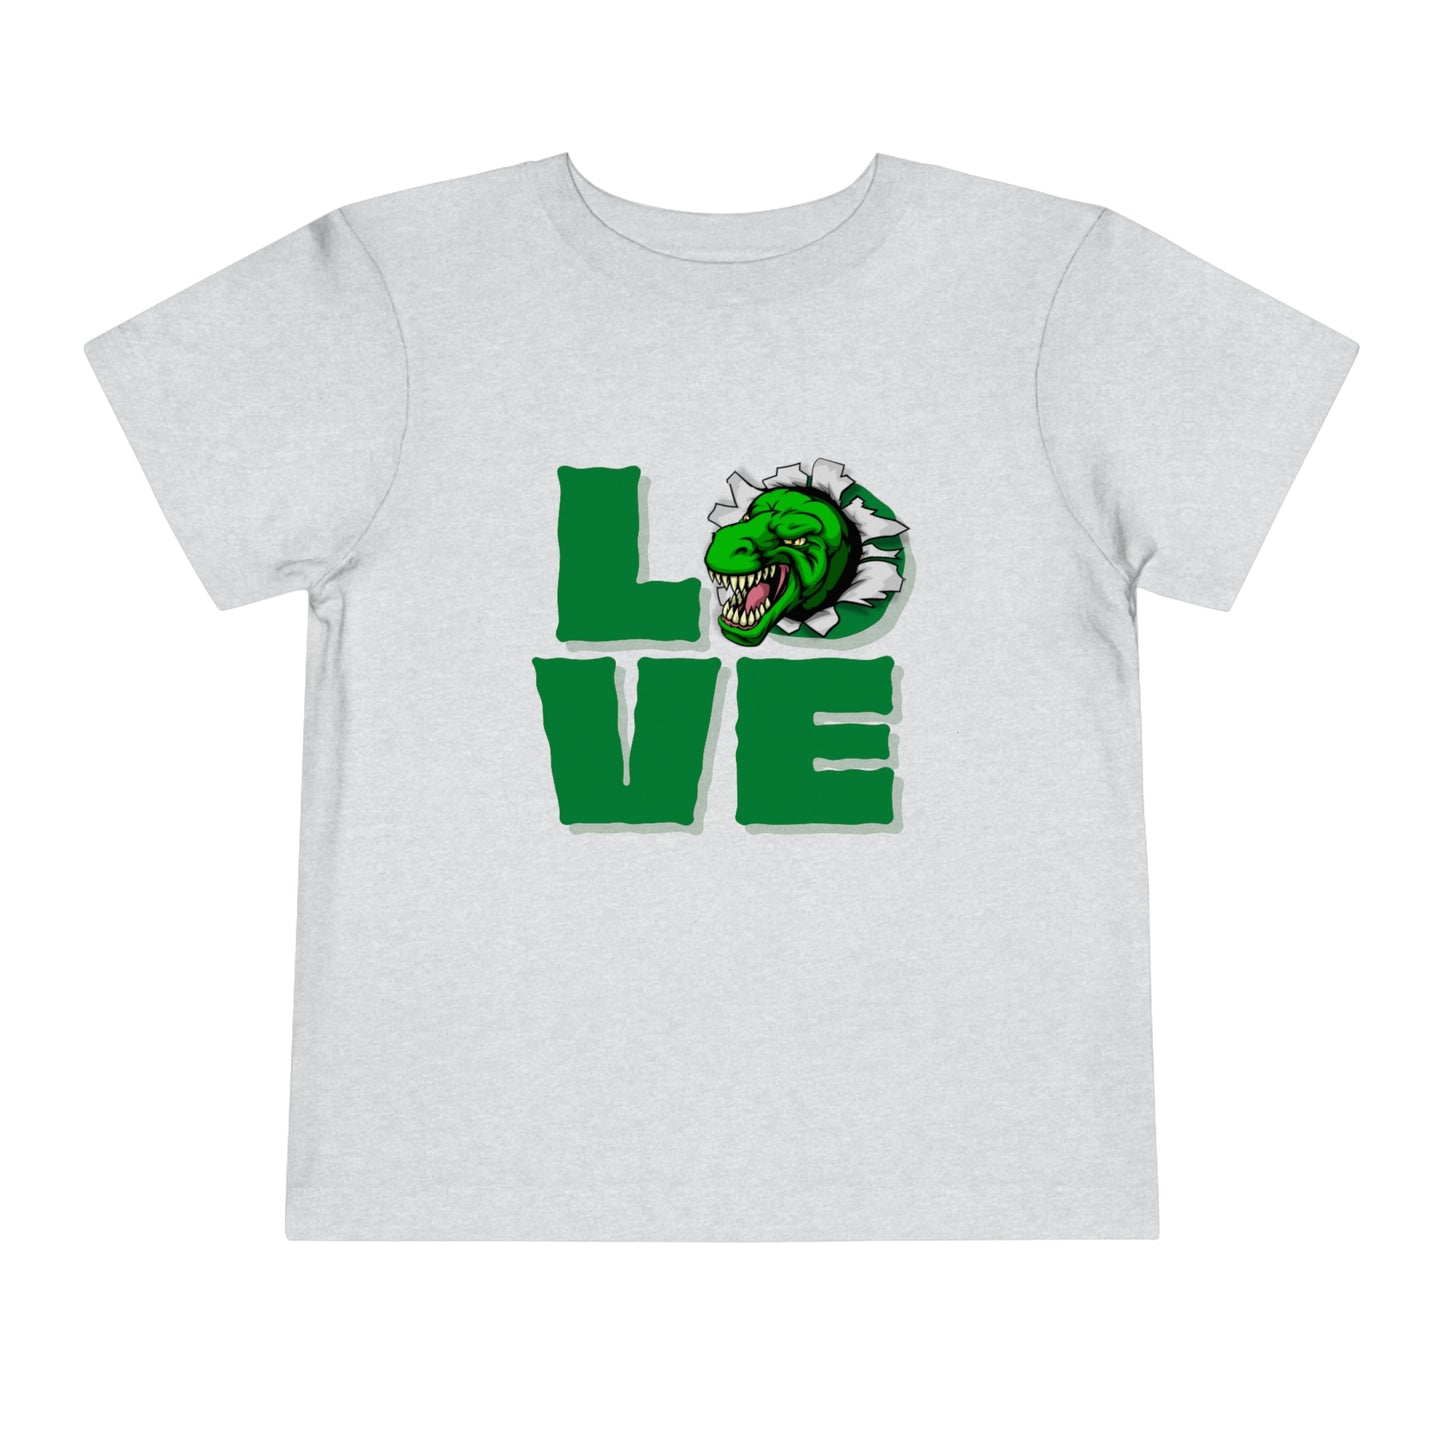 Dinosaur LOVE Toddler T-shirt